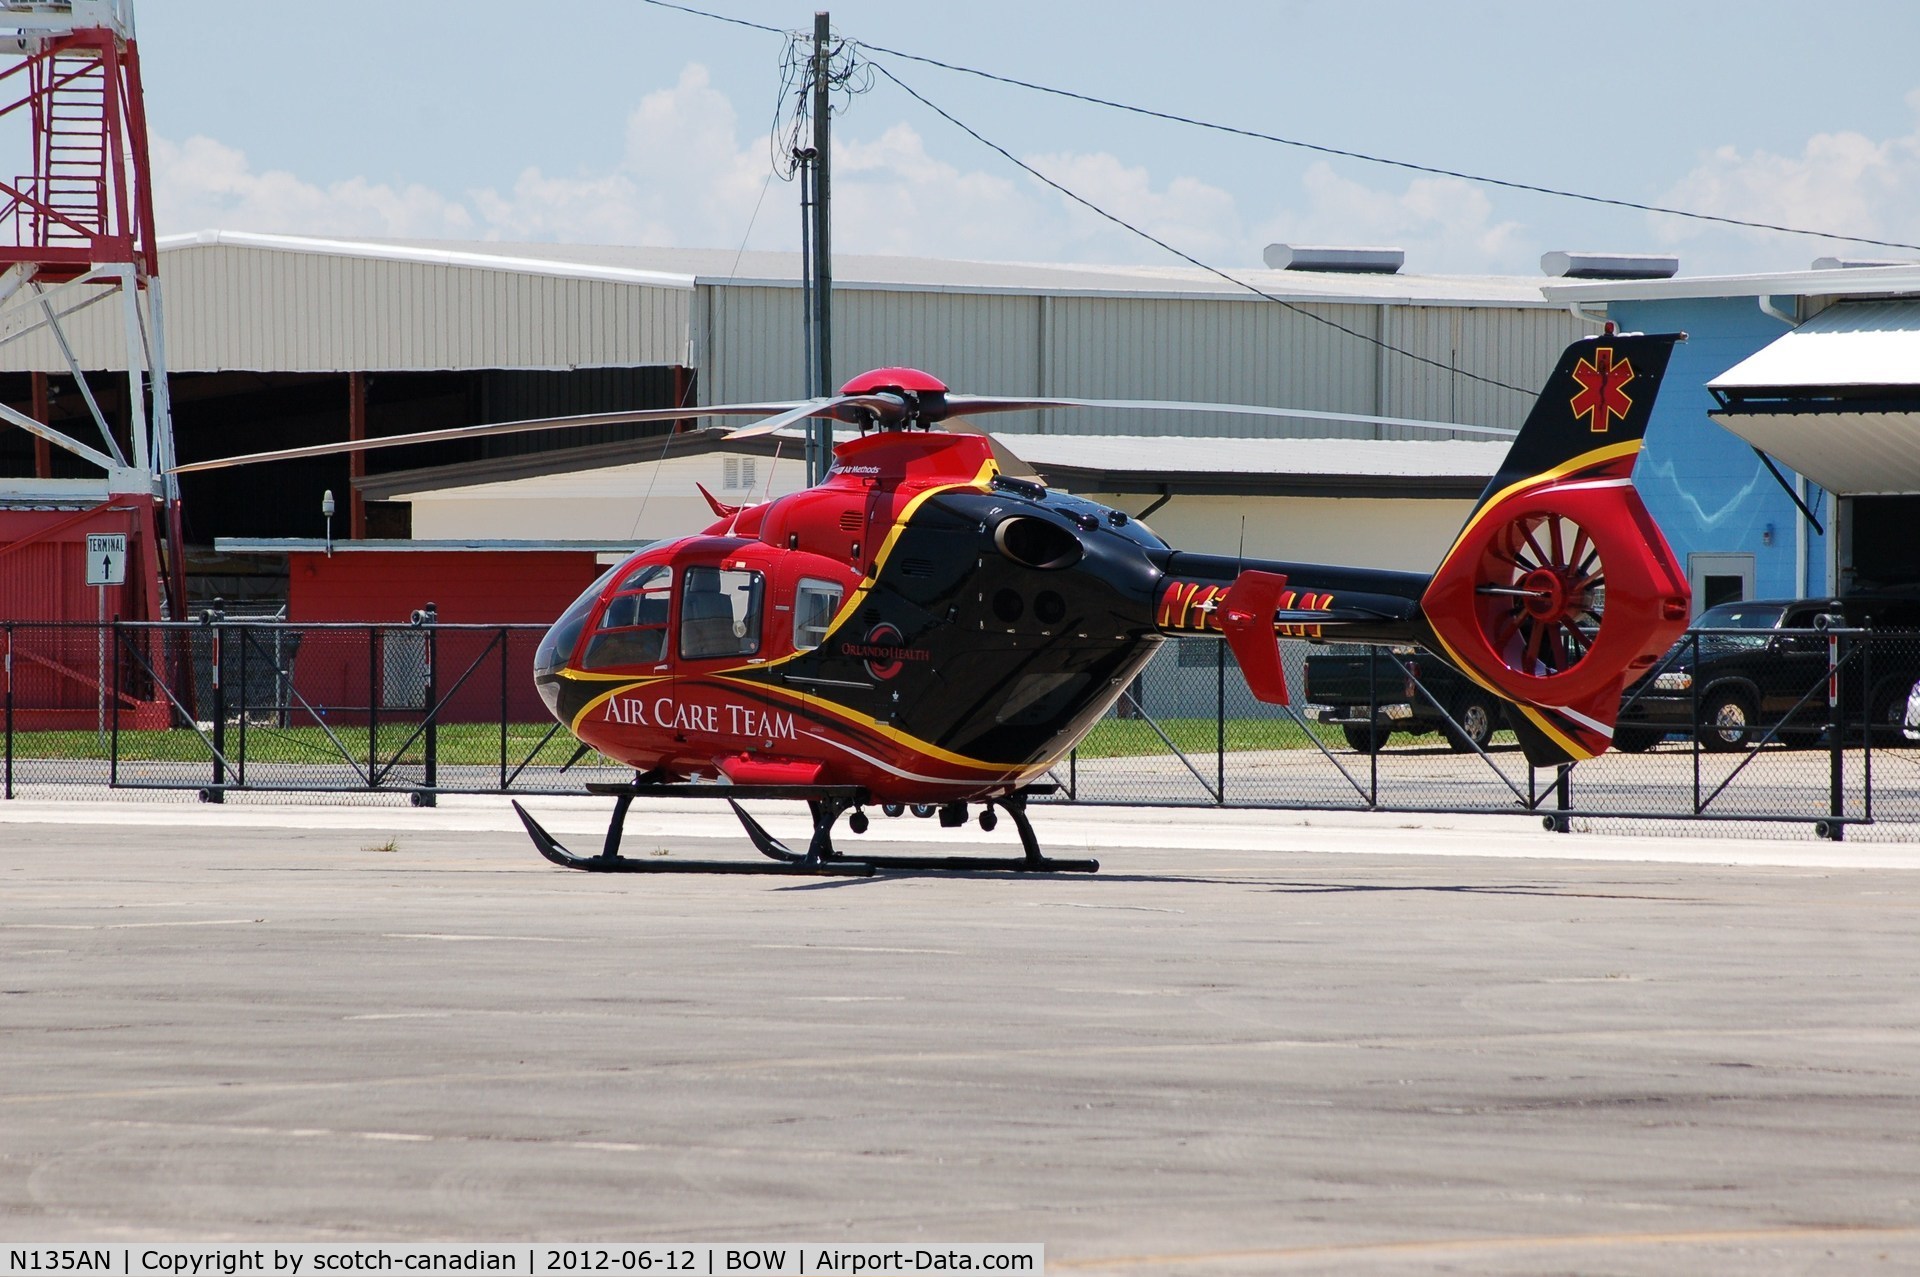 N135AN, 2004 Eurocopter EC-135P-2 C/N 0351, 2004 Eurocopter Deutschland Gmbh EC 135 P2 N135AN at Bartow Municipal Airport, Bartow, FL